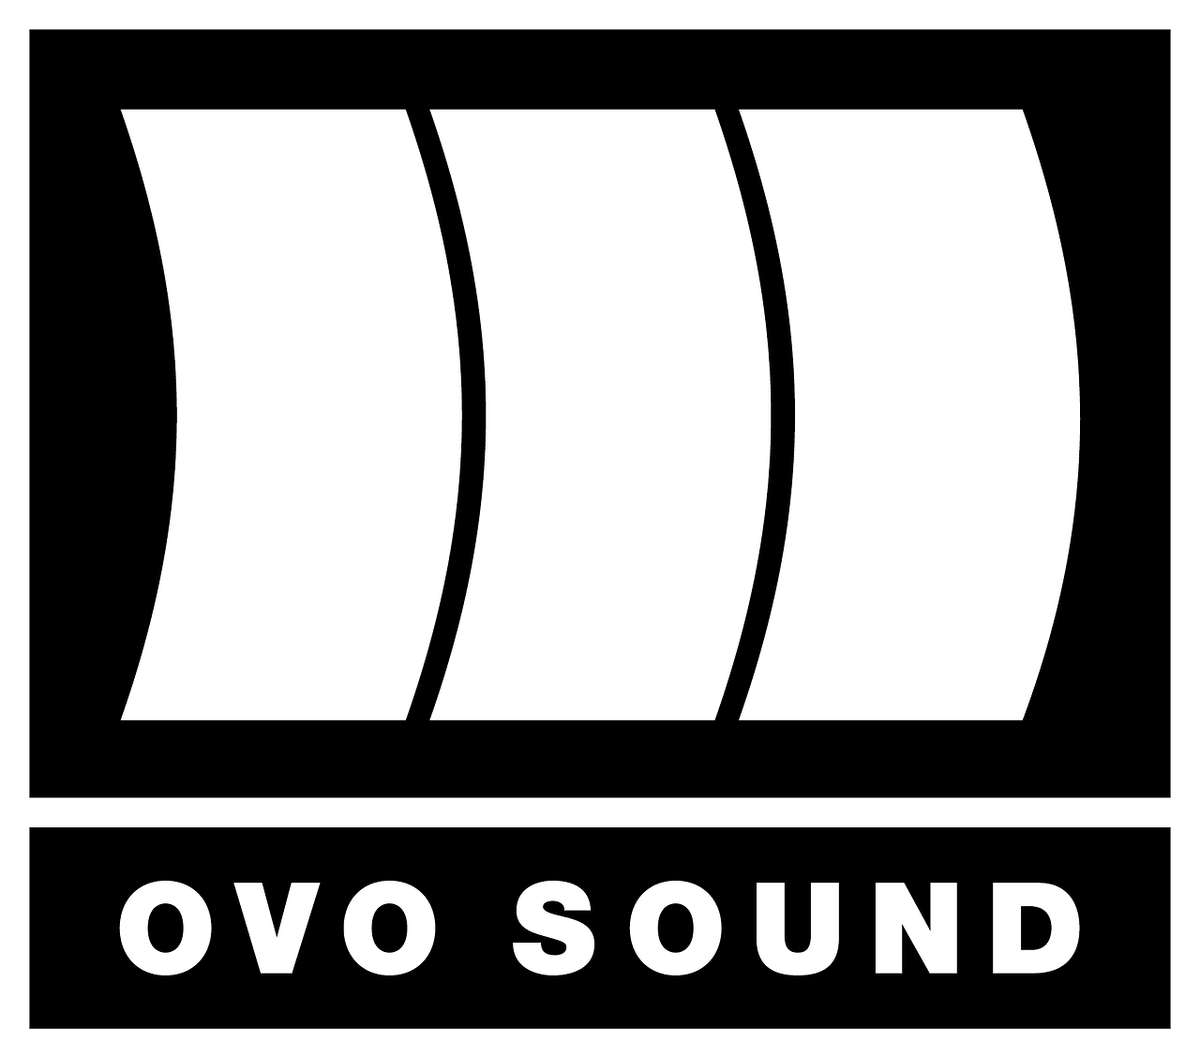 OVO - Drake - 6 God] Warehouse Sale - Toronto - RedFlagDeals.com